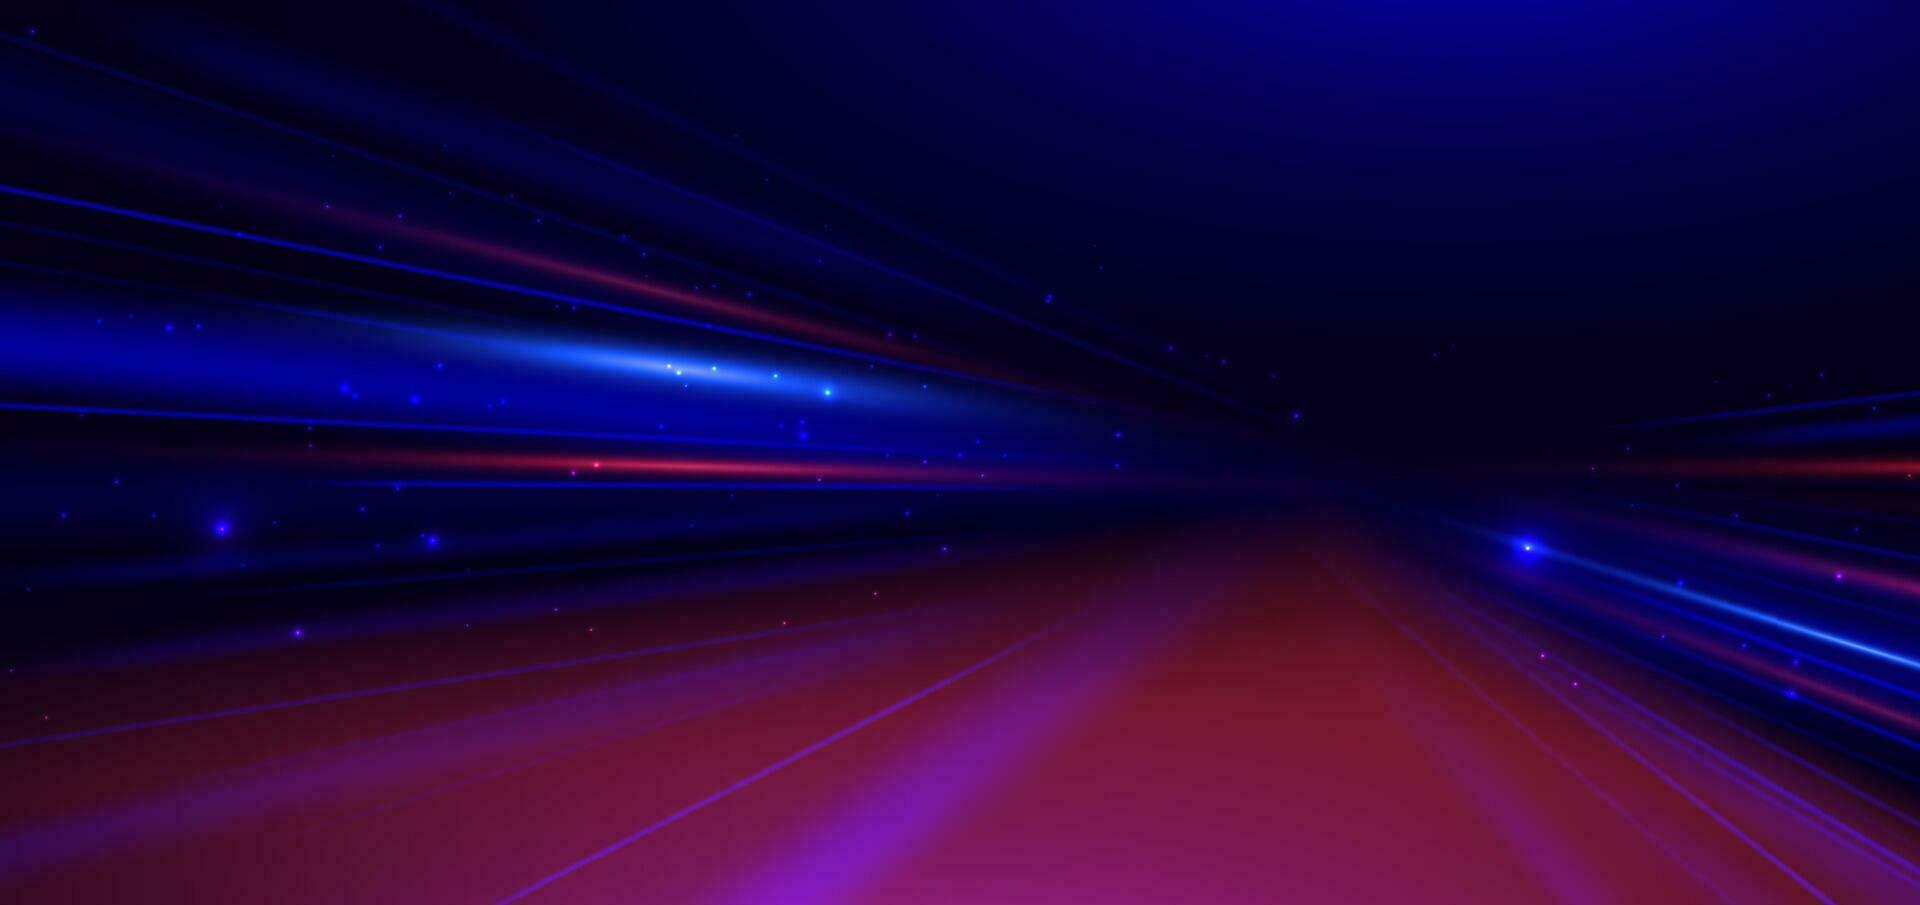 abstract technologie futuristische gloeiend neon blauw en rood licht straal met snelheid beweging verder gaan donker blauw achtergrond. vector